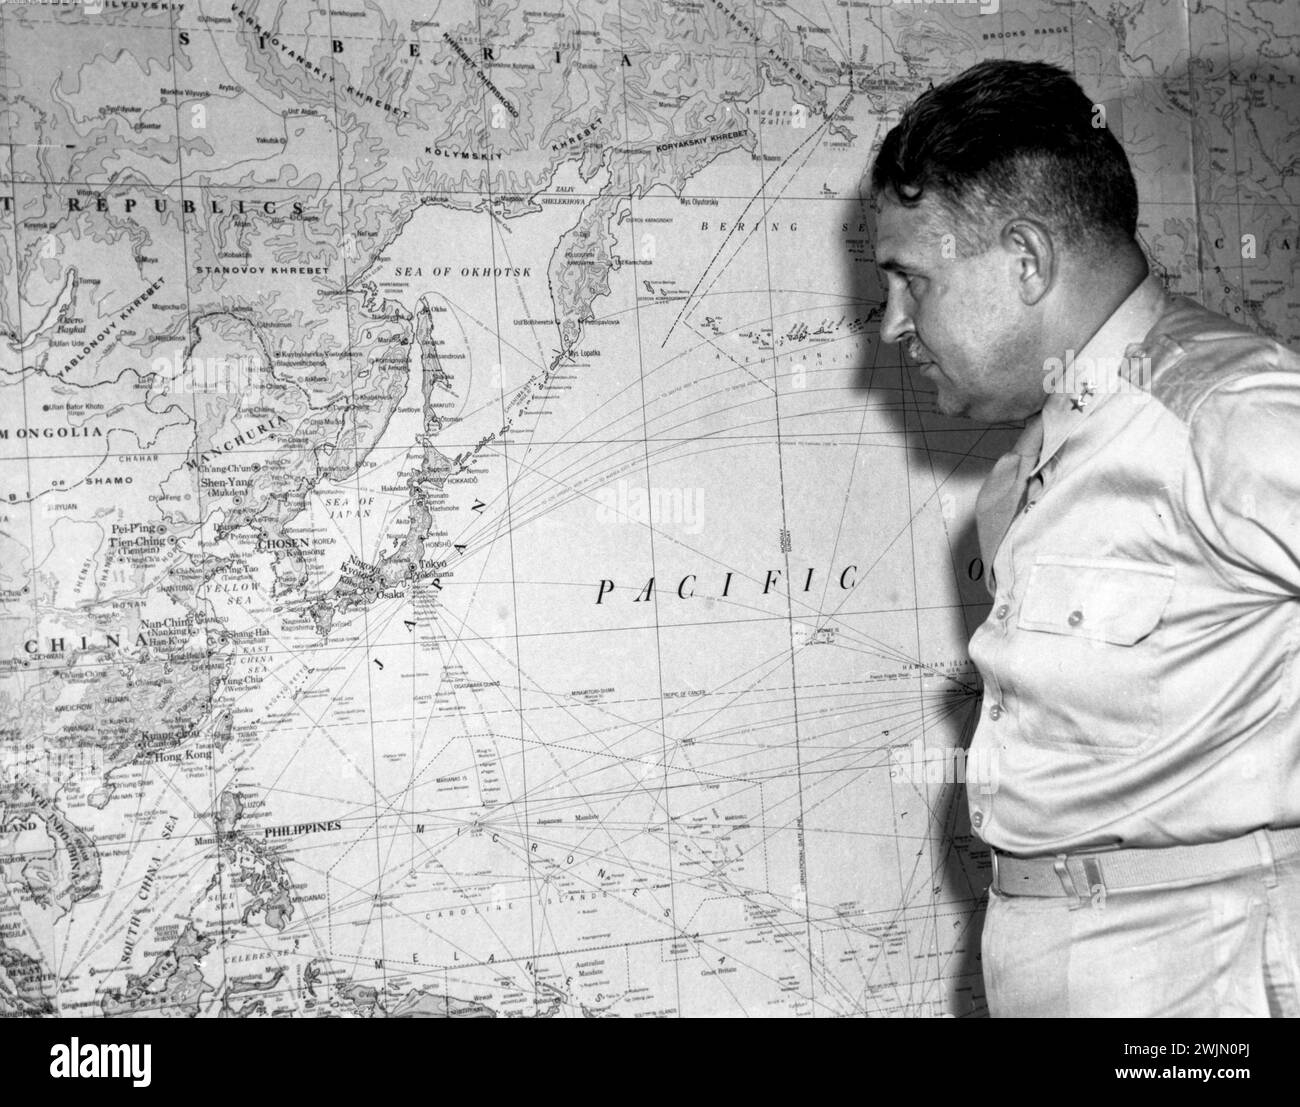 General Groves regardant une carte de l'océan Pacifique à Oak Ridge. Groves a été impliqué dans les bombes atomiques qui ont mis fin à la seconde Guerre mondiale Banque D'Images